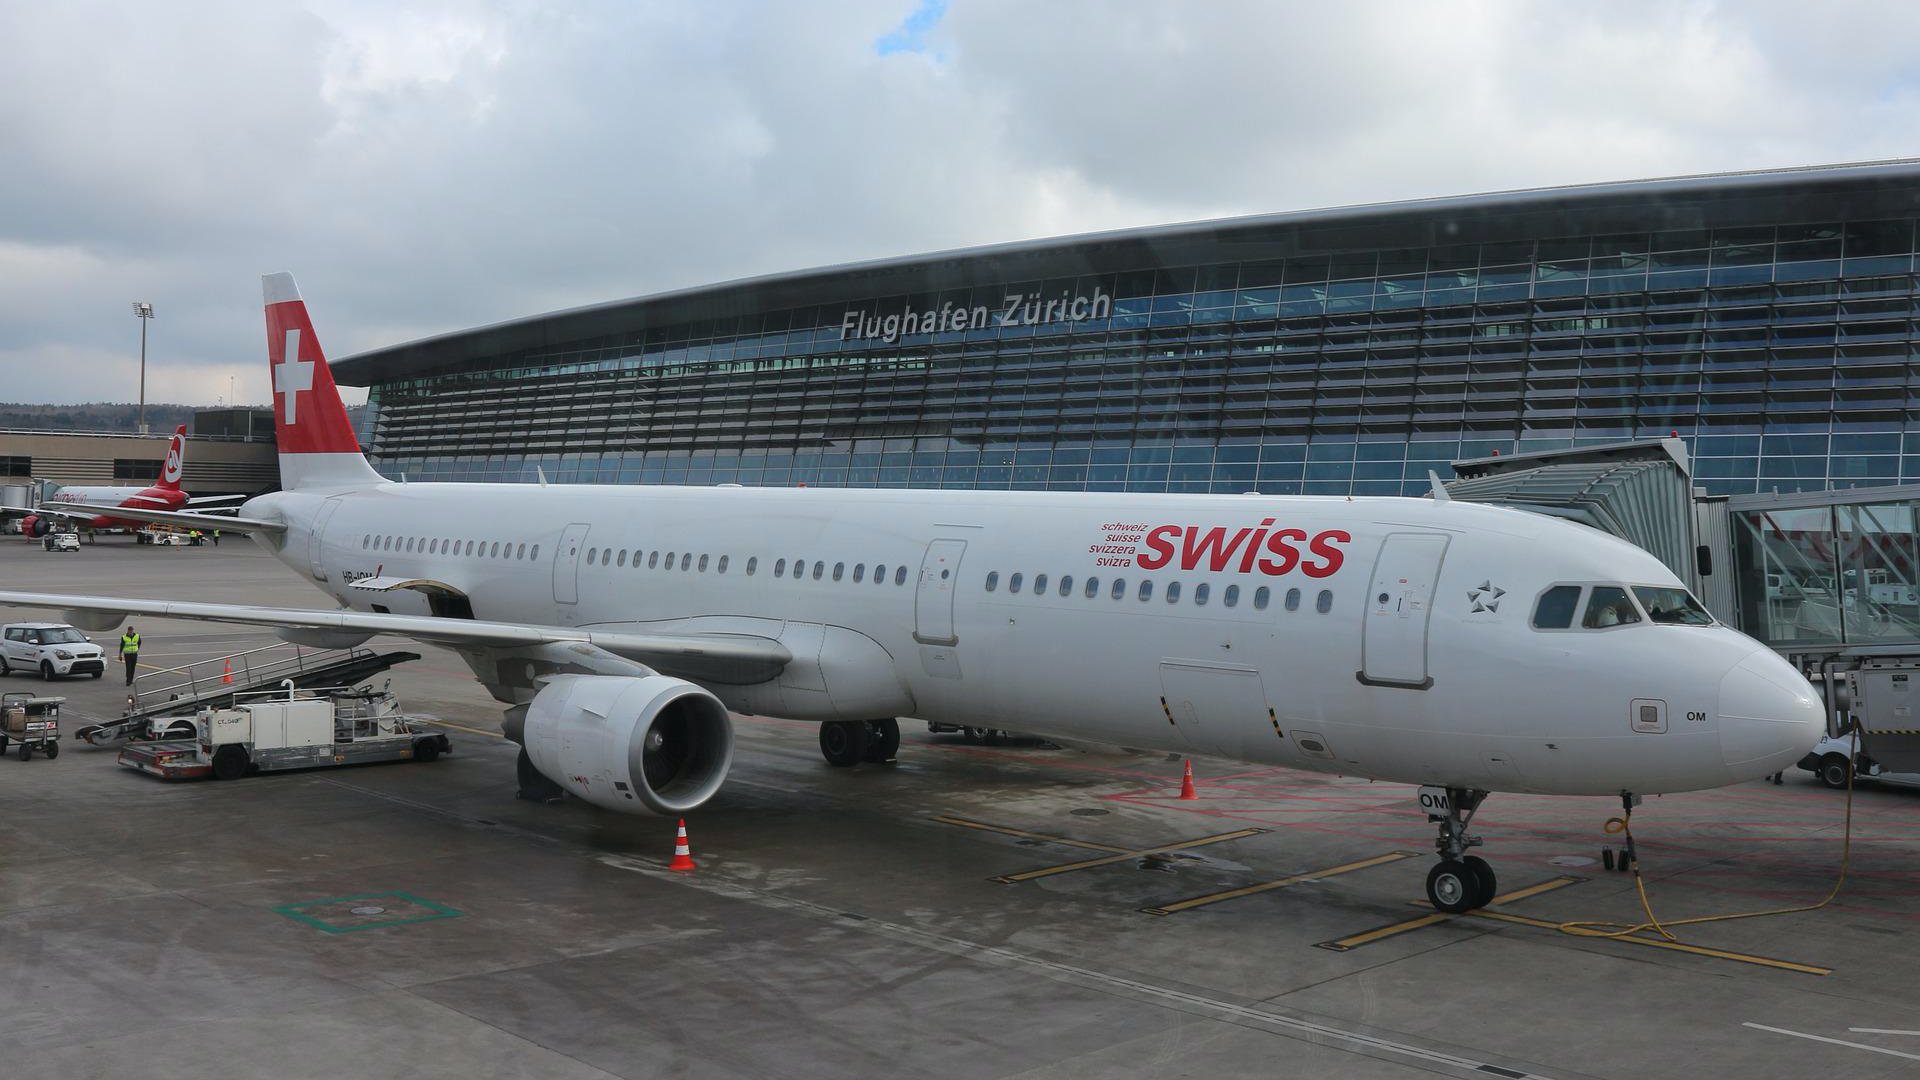 Egy Swiss repülőgép a zürichi repülőtéren